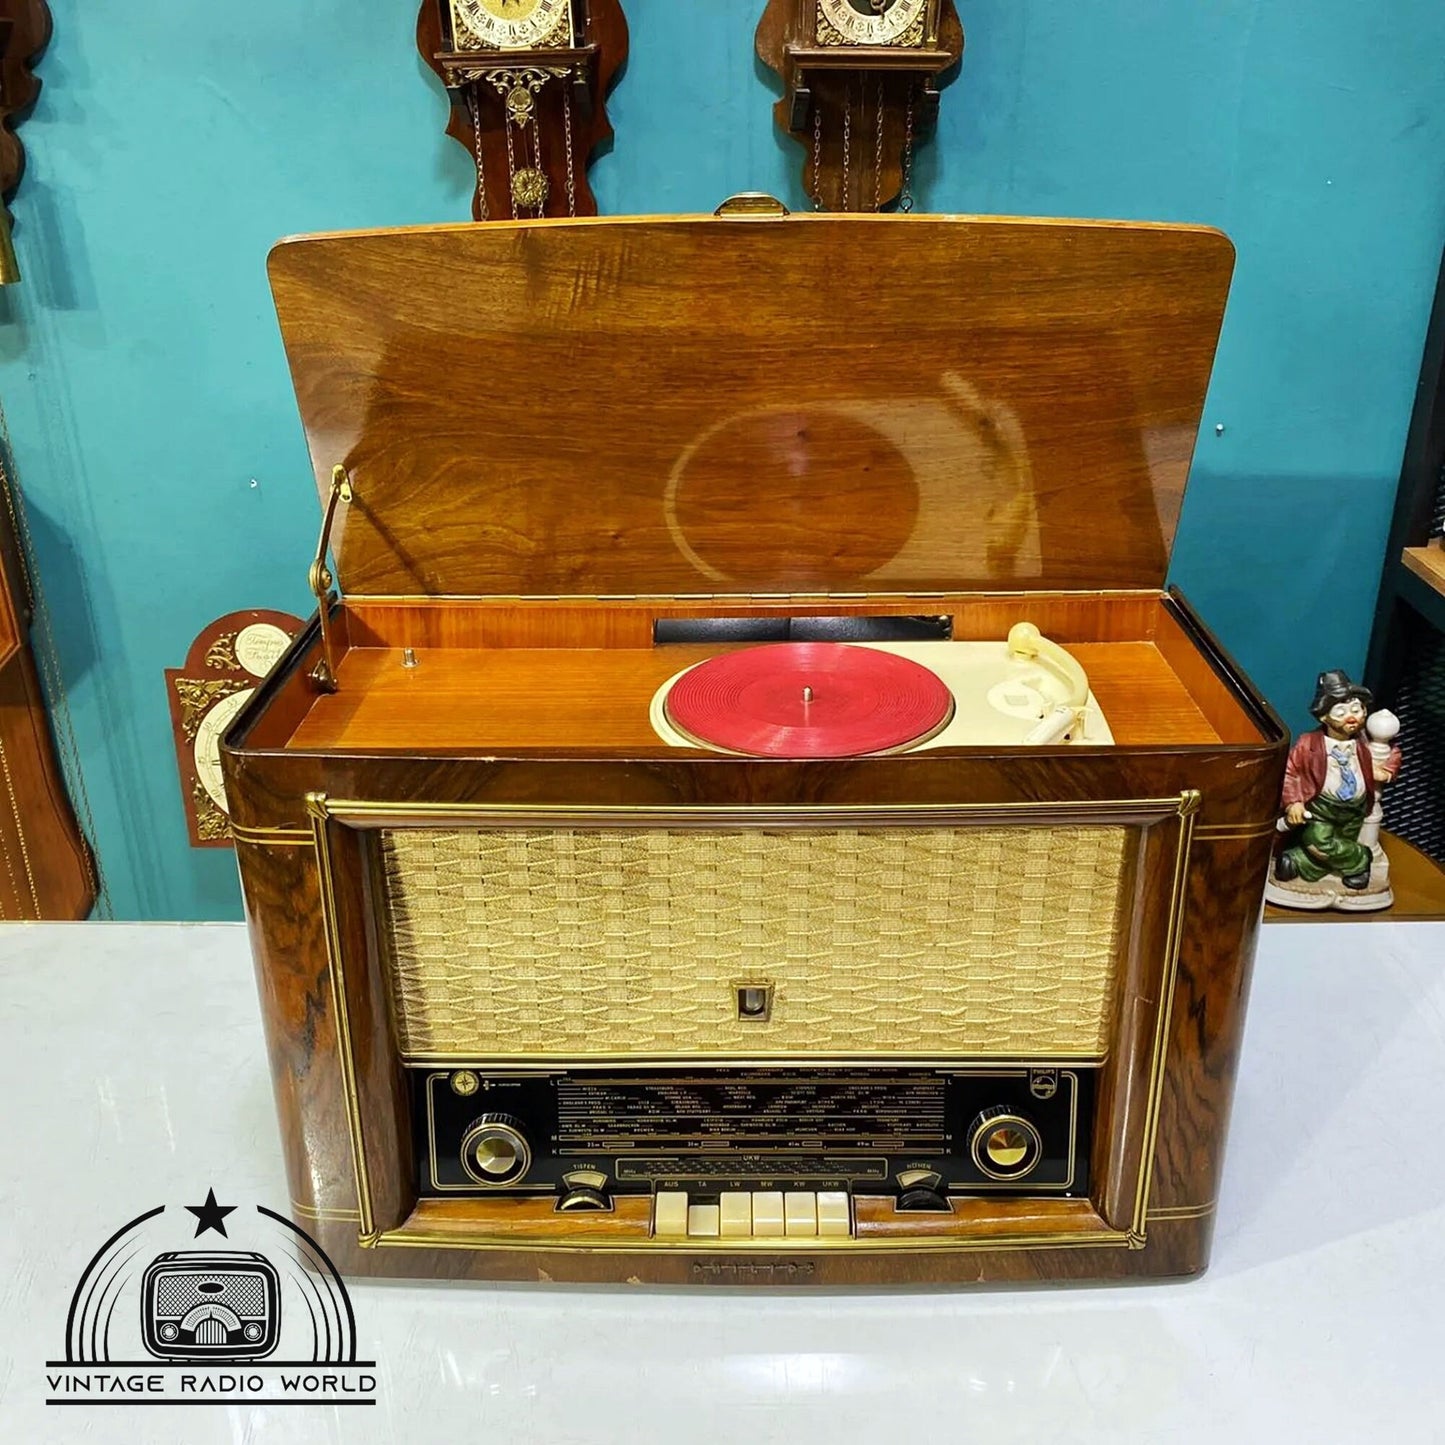 PHLIPS PHONOSÜPER 544 - Vintage Radio Marvel, Antique Classic, Lamp Radio Delight!, Turntable